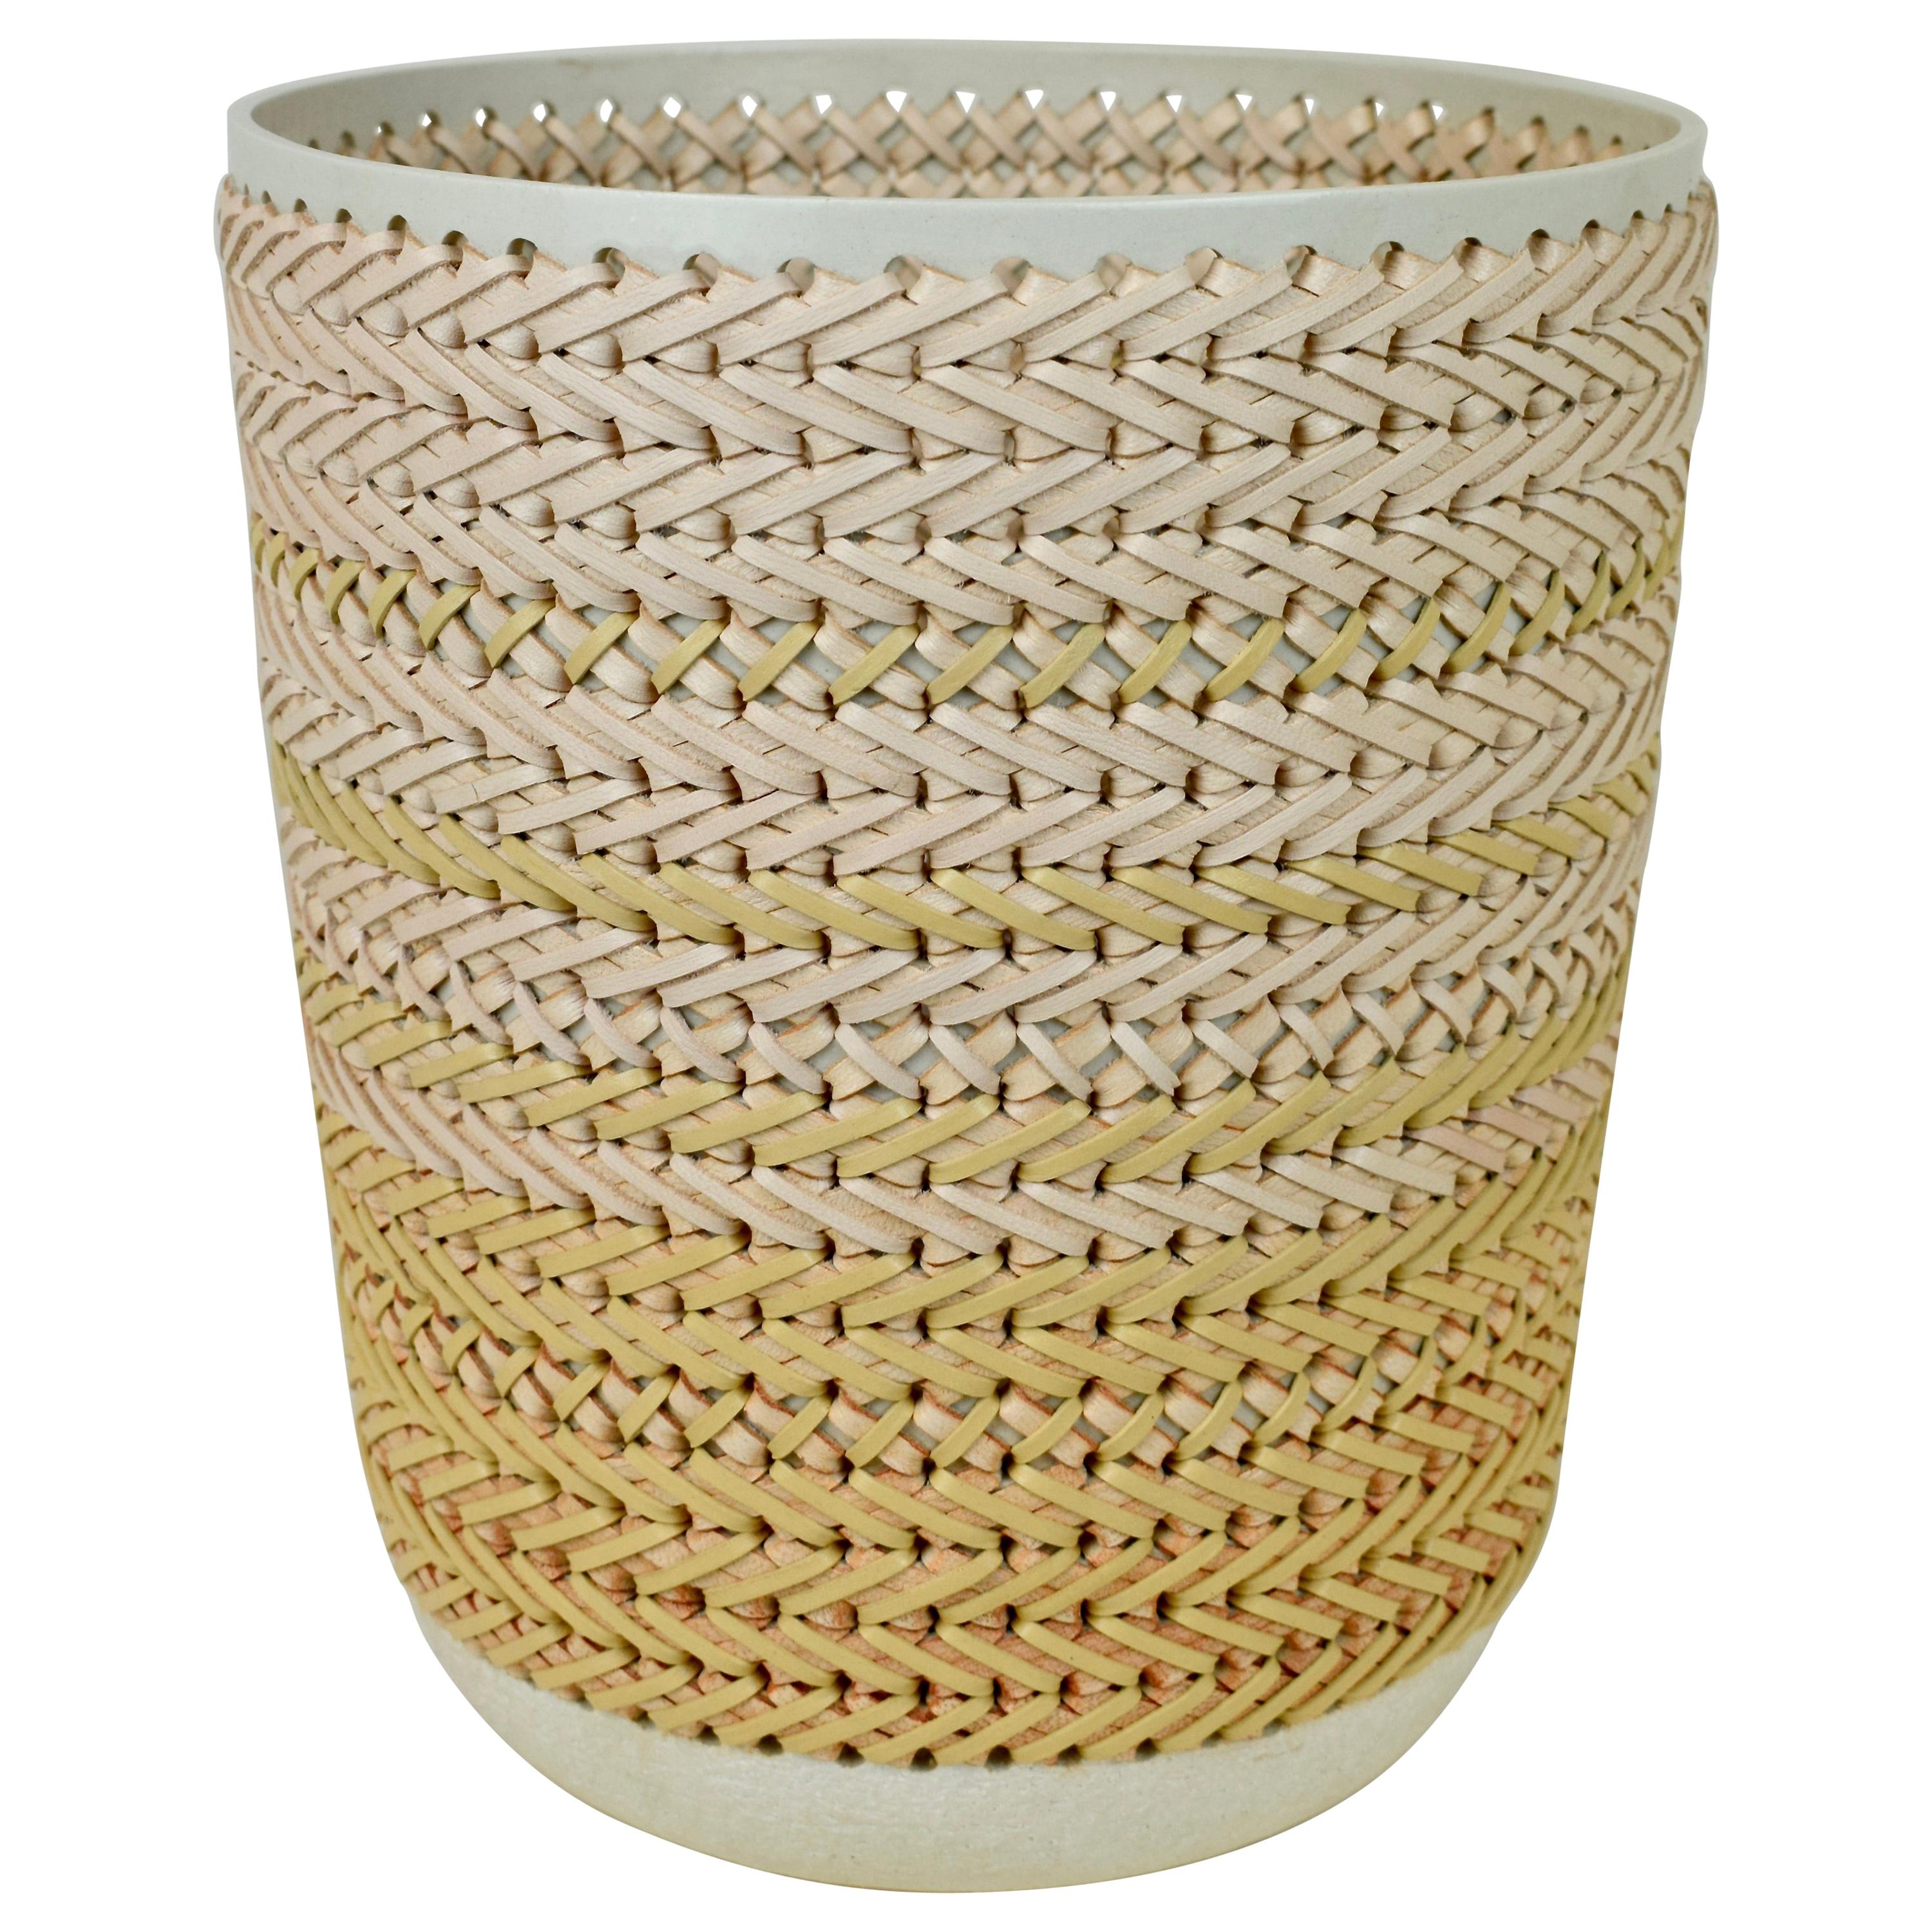 Embroidered Decorative Ceramic Vase, Gladiateur #80